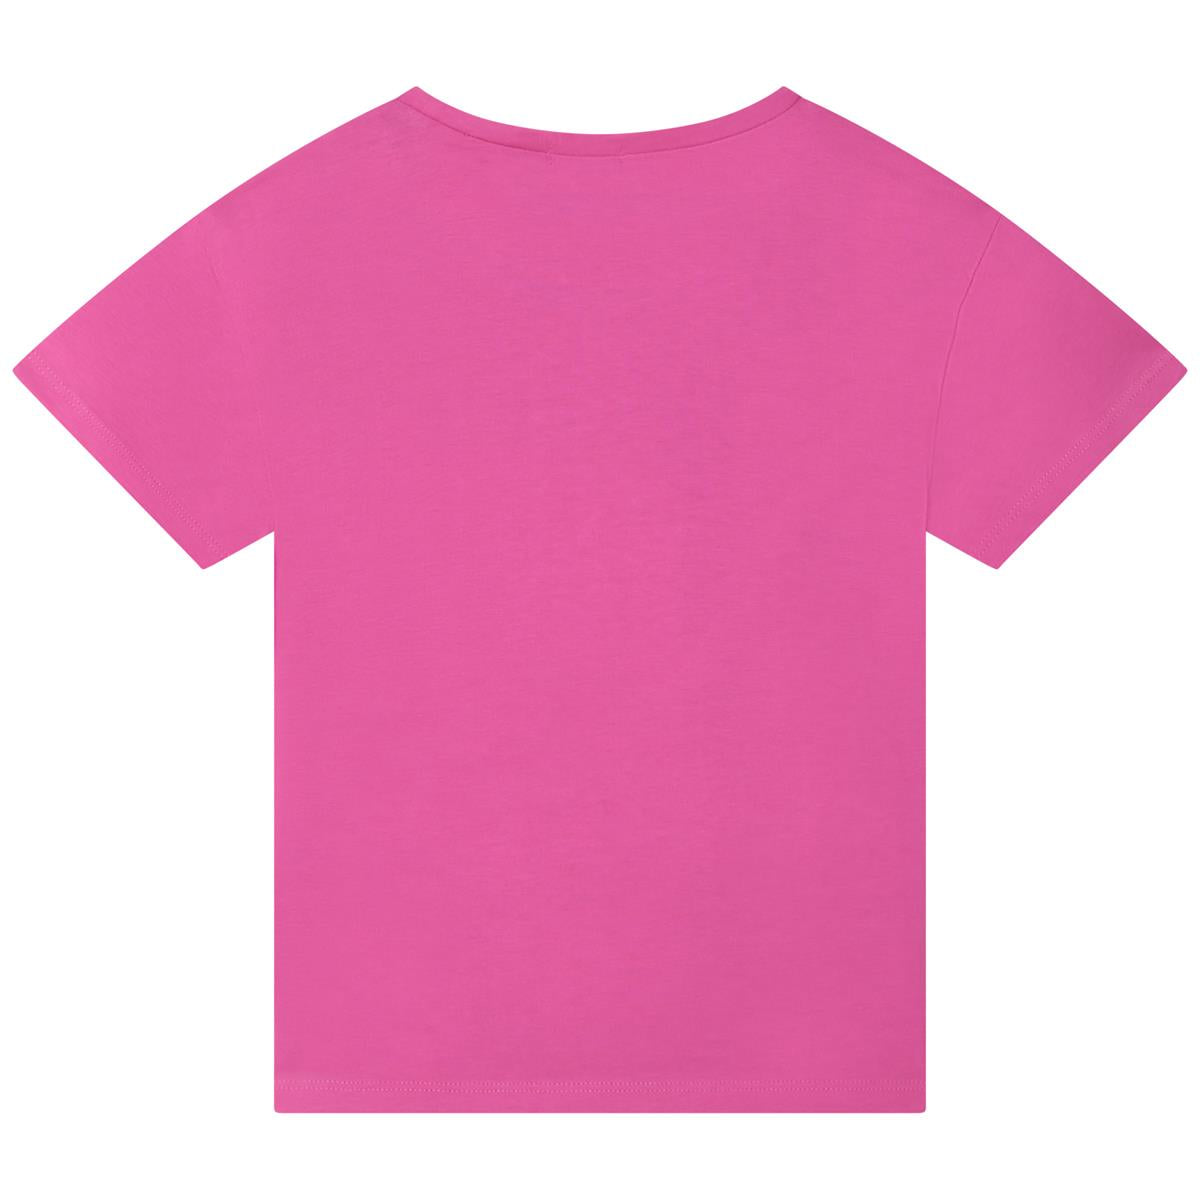 Girls Fuchsia Printed T-Shirt